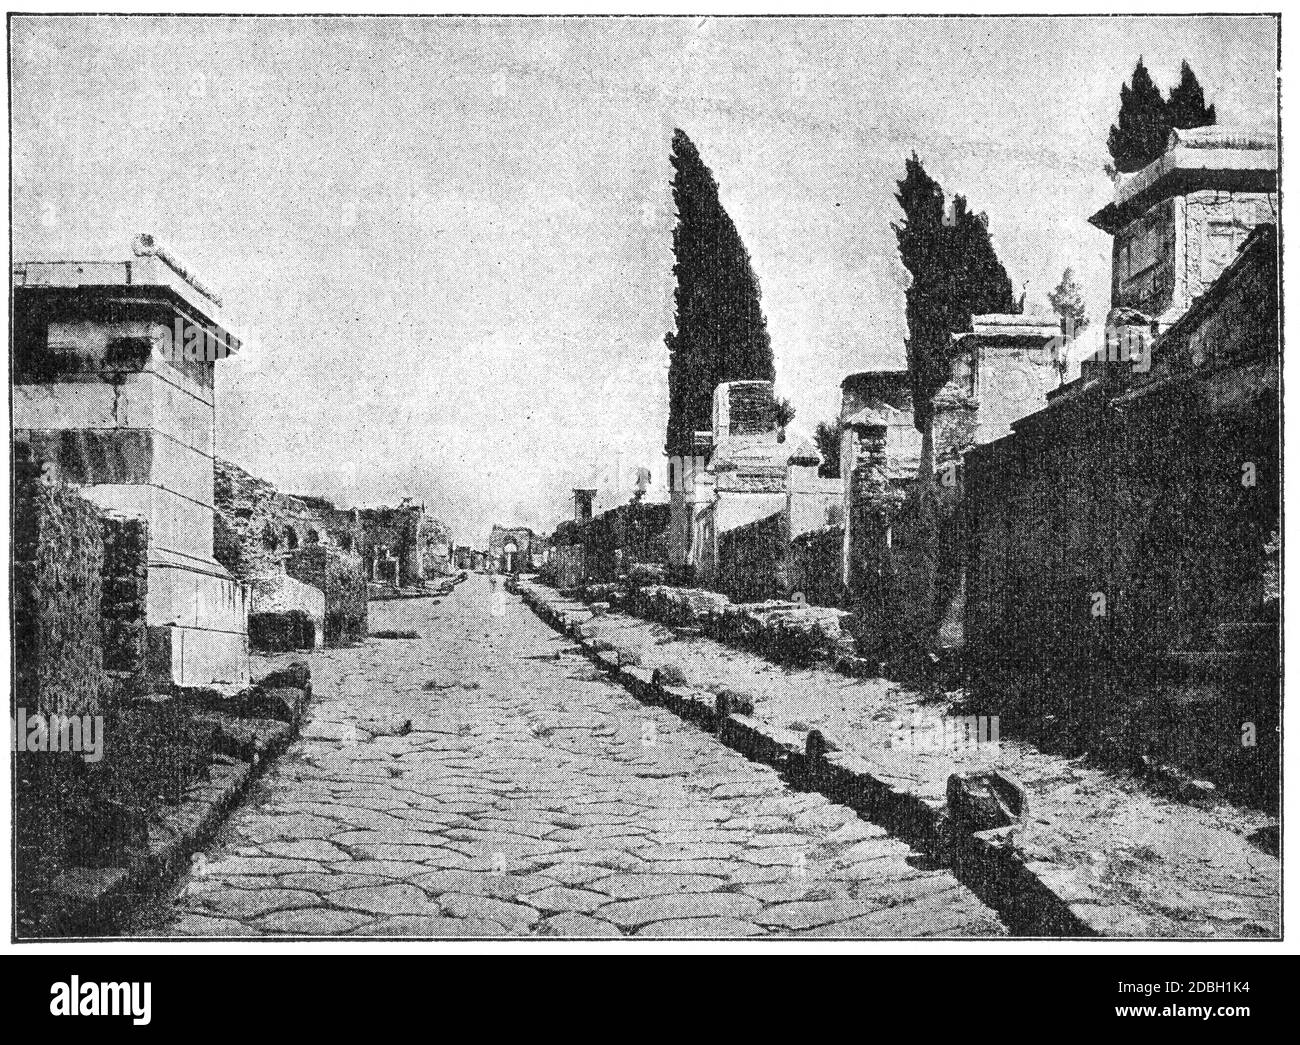 Le strade di Pompei. La città fu distrutta e sepolta sotto cenere vulcanica e pomice nell'eruzione del Vesuvio nel 79 d.C. Illustrazione di Th Foto Stock